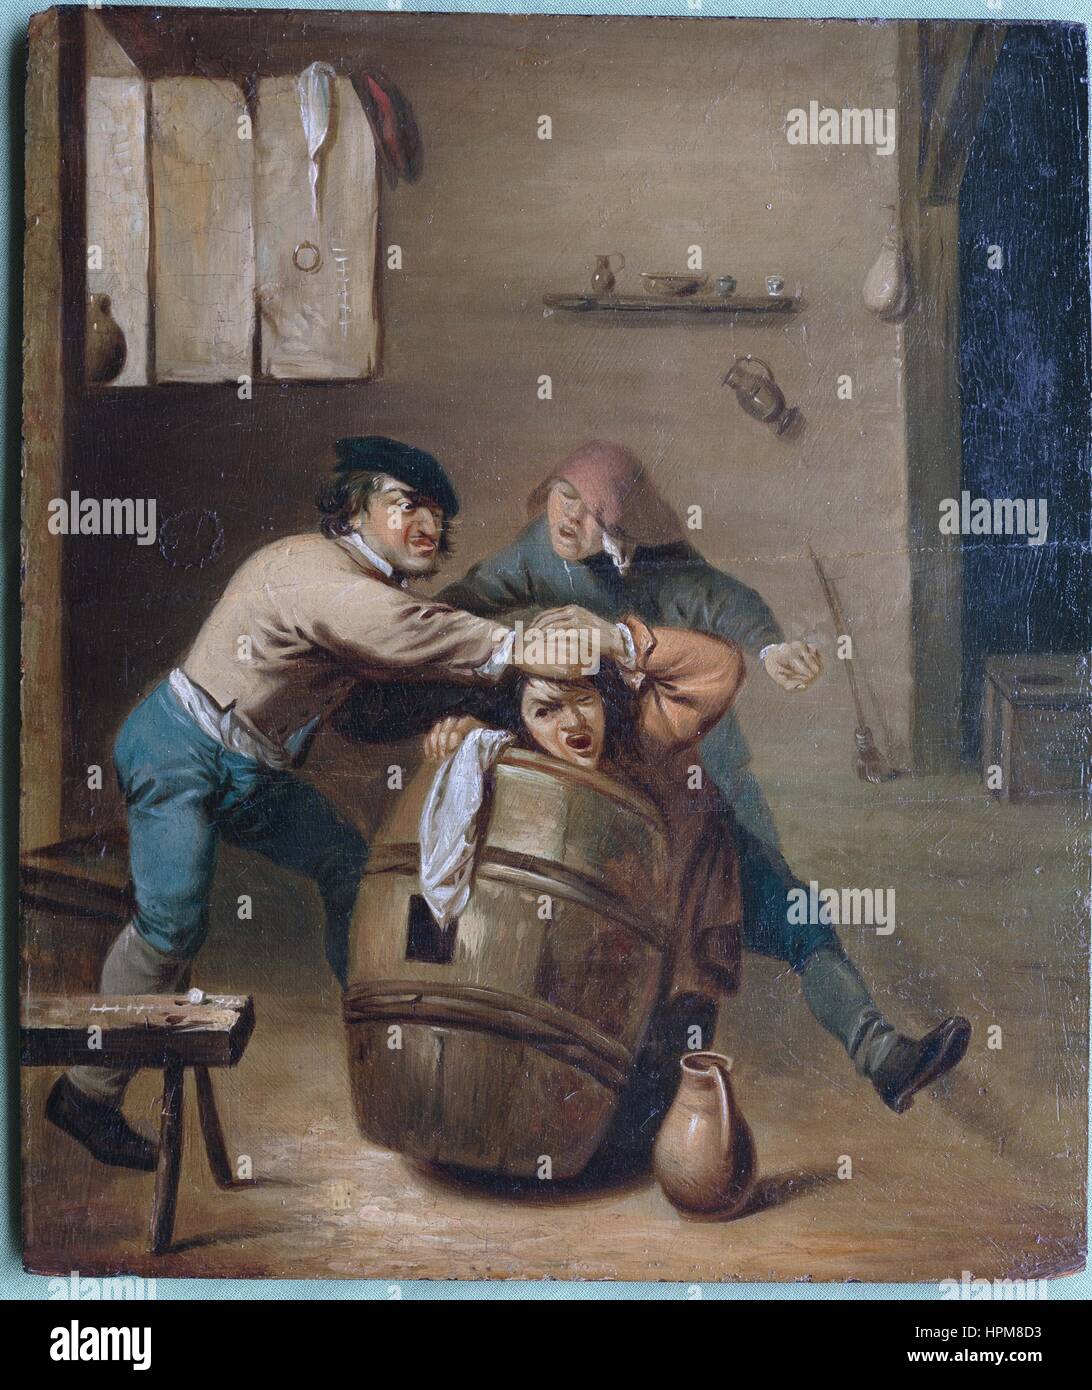 Peinture de Adriaen Brouwer (né à Oudenaarde, ch. 1605 - janvier 1638, Anvers est décédé) deux agriculteurs qui se bagarrent sur un jeu de cartes Banque D'Images